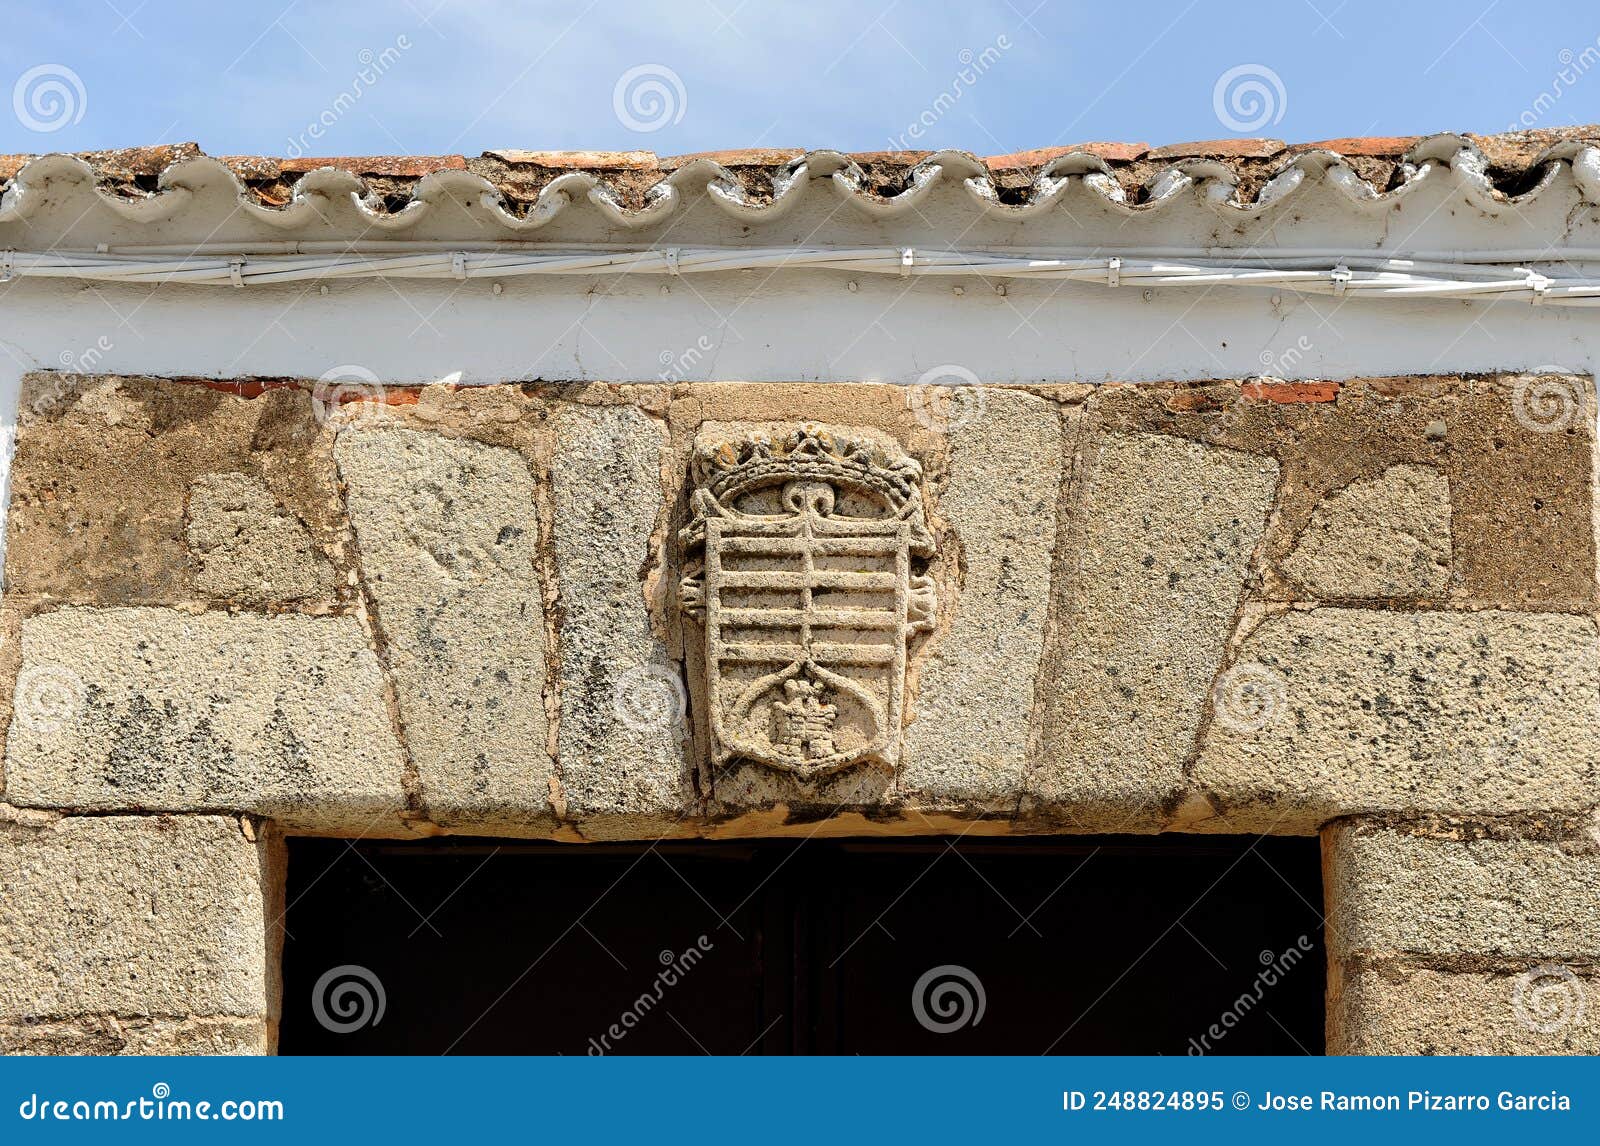 casa con escudo nobiliario en alange -baÃÂ±os de alange-, extremadura, espaÃÂ±a